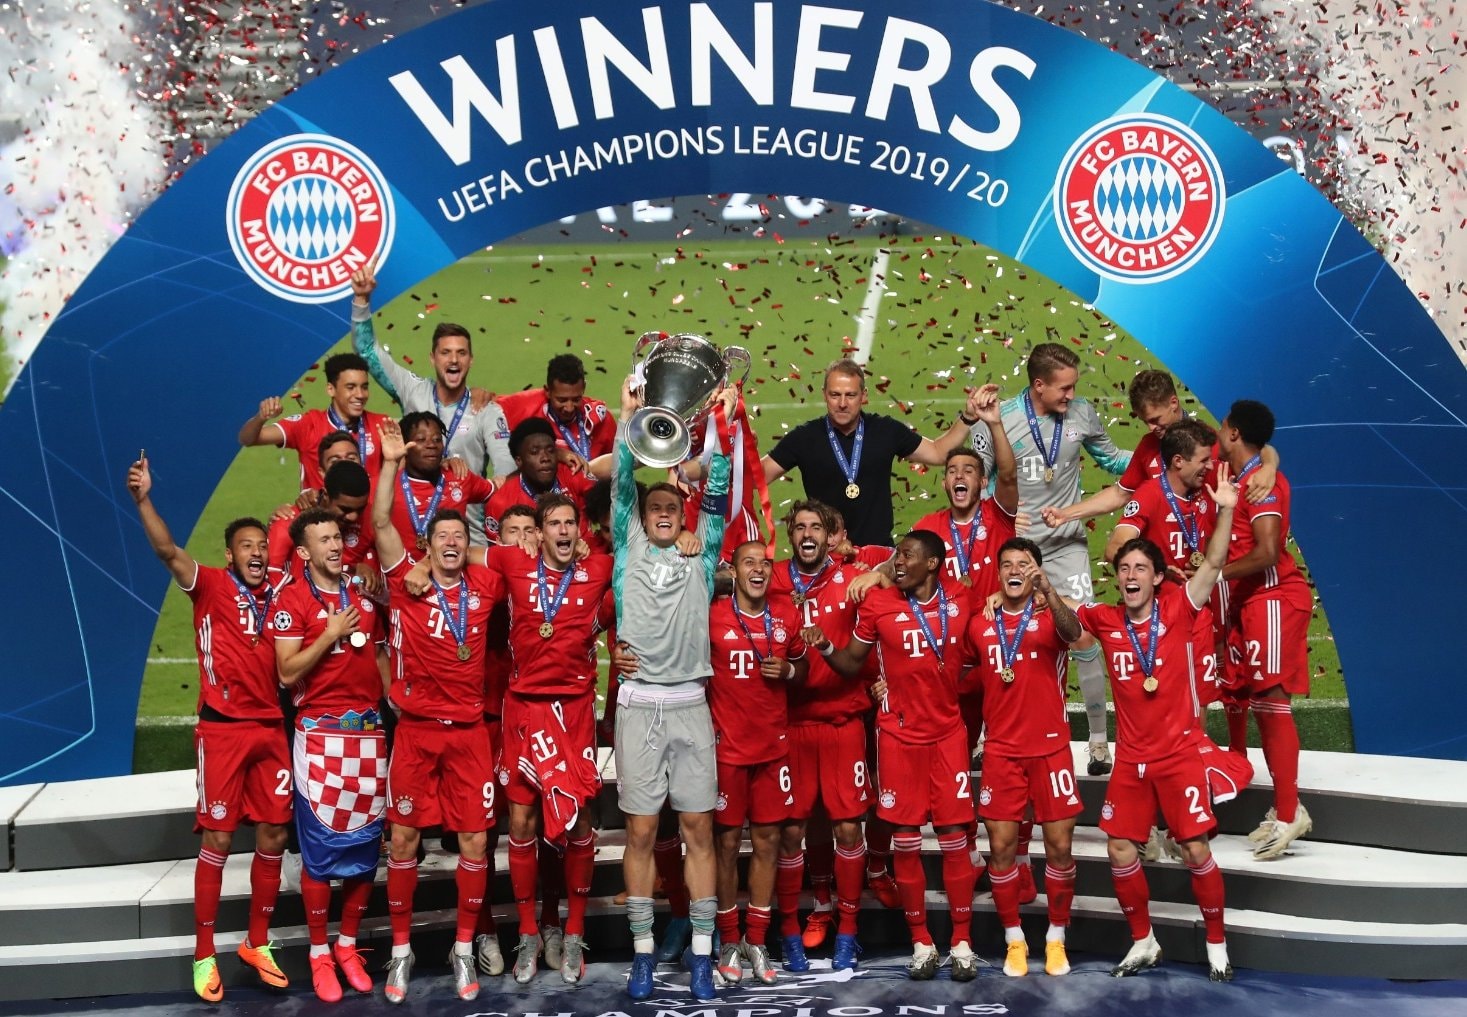 Bayern Munich beat PSG to win 6th Champions League title